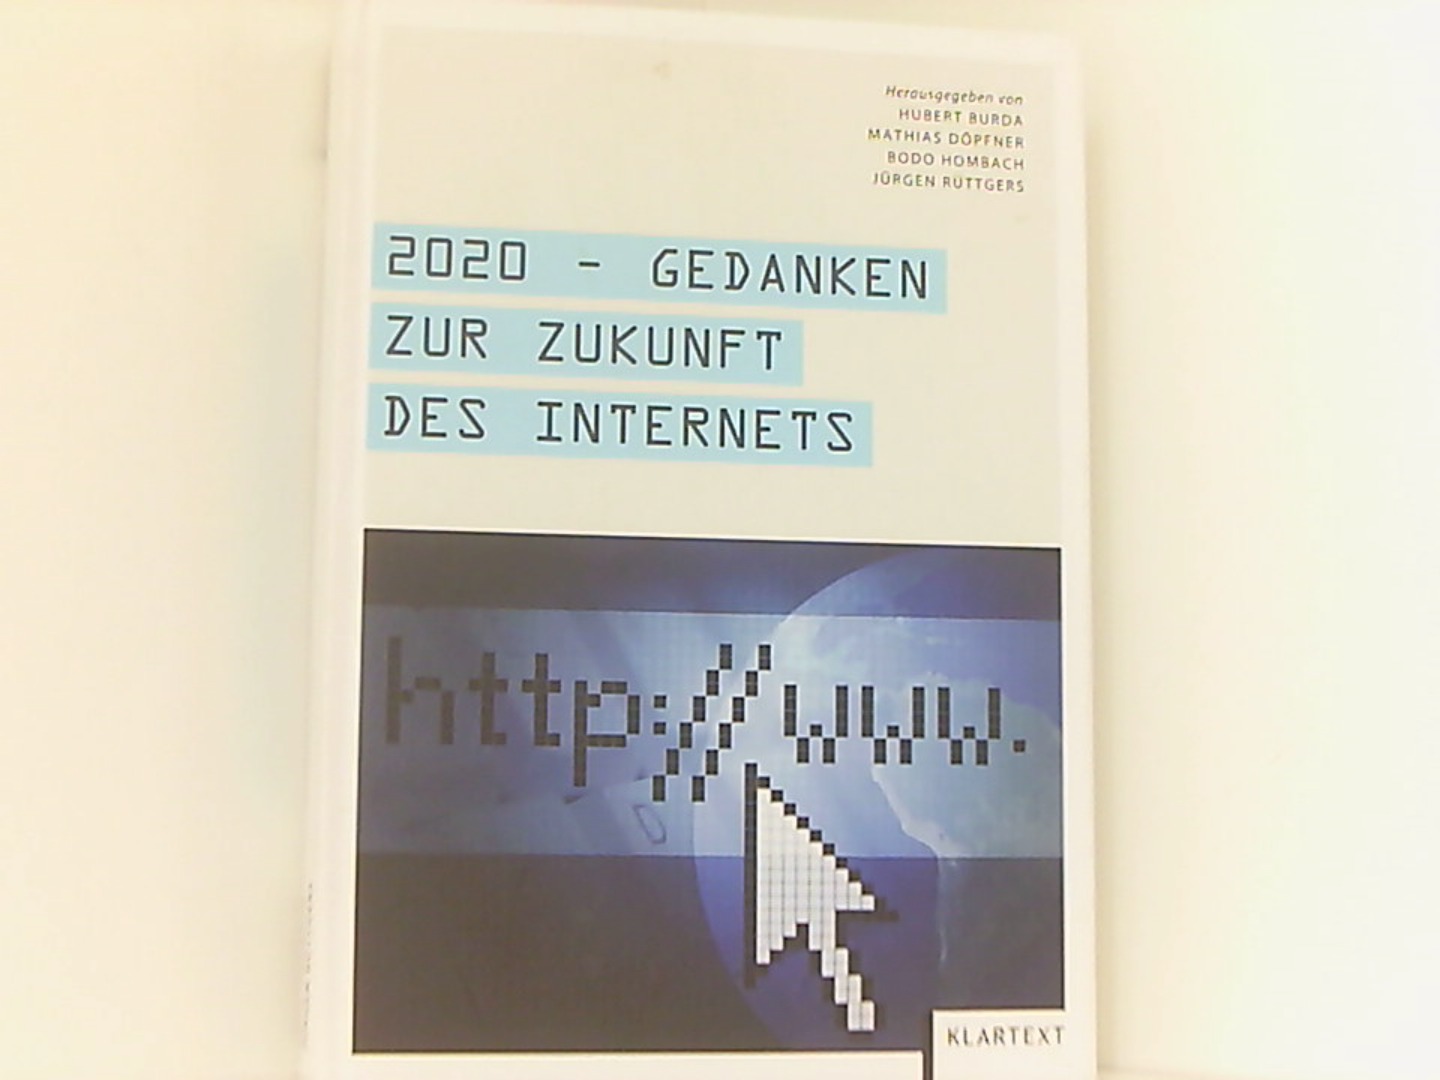 2020 - Gedanken zur Zukunft des Internets - Hubert, Burda, Döpfner Mathias Hombach Bodo u. a.